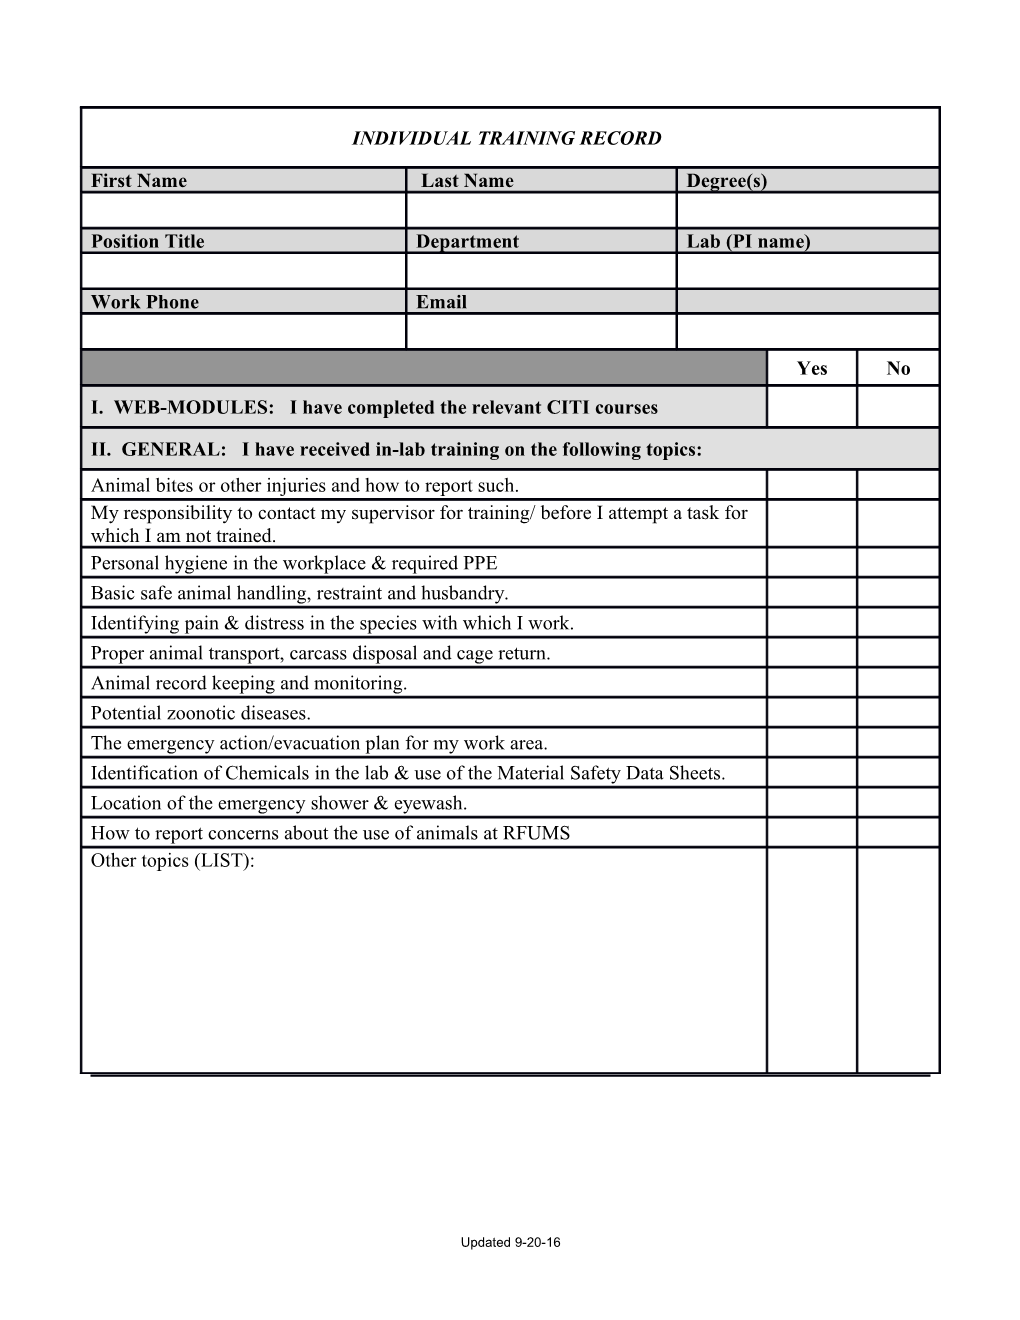 Summary Form Instructions